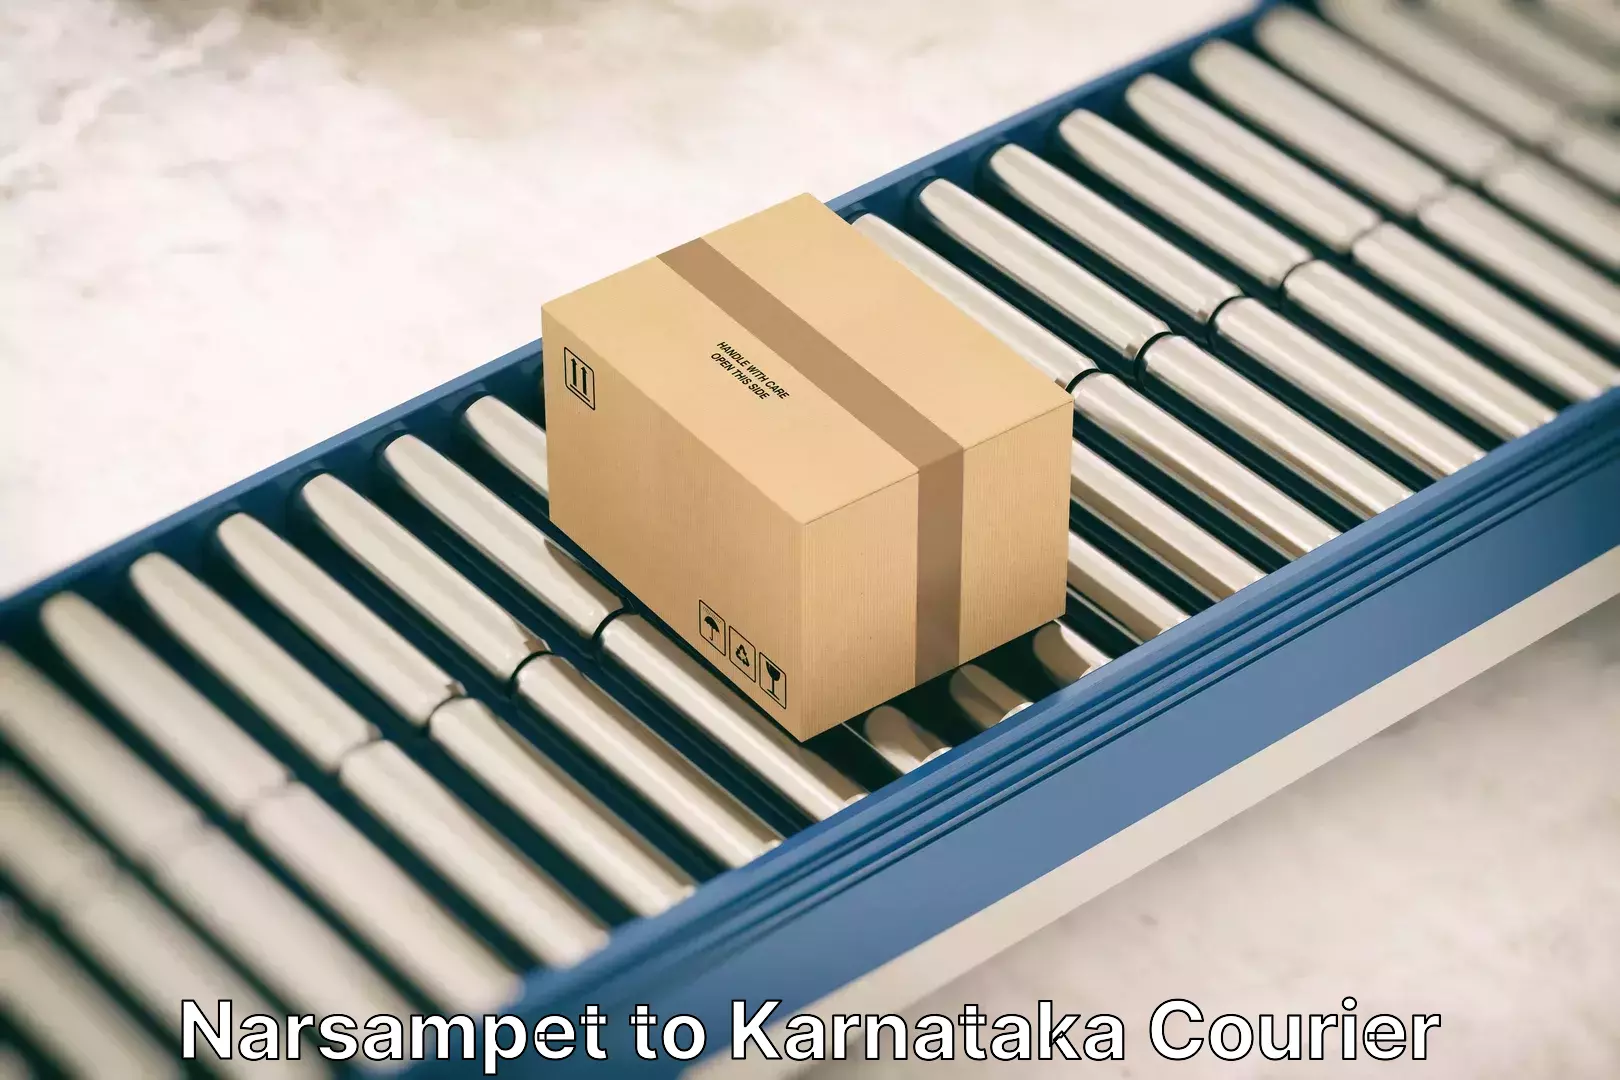 Furniture delivery service Narsampet to Karnataka